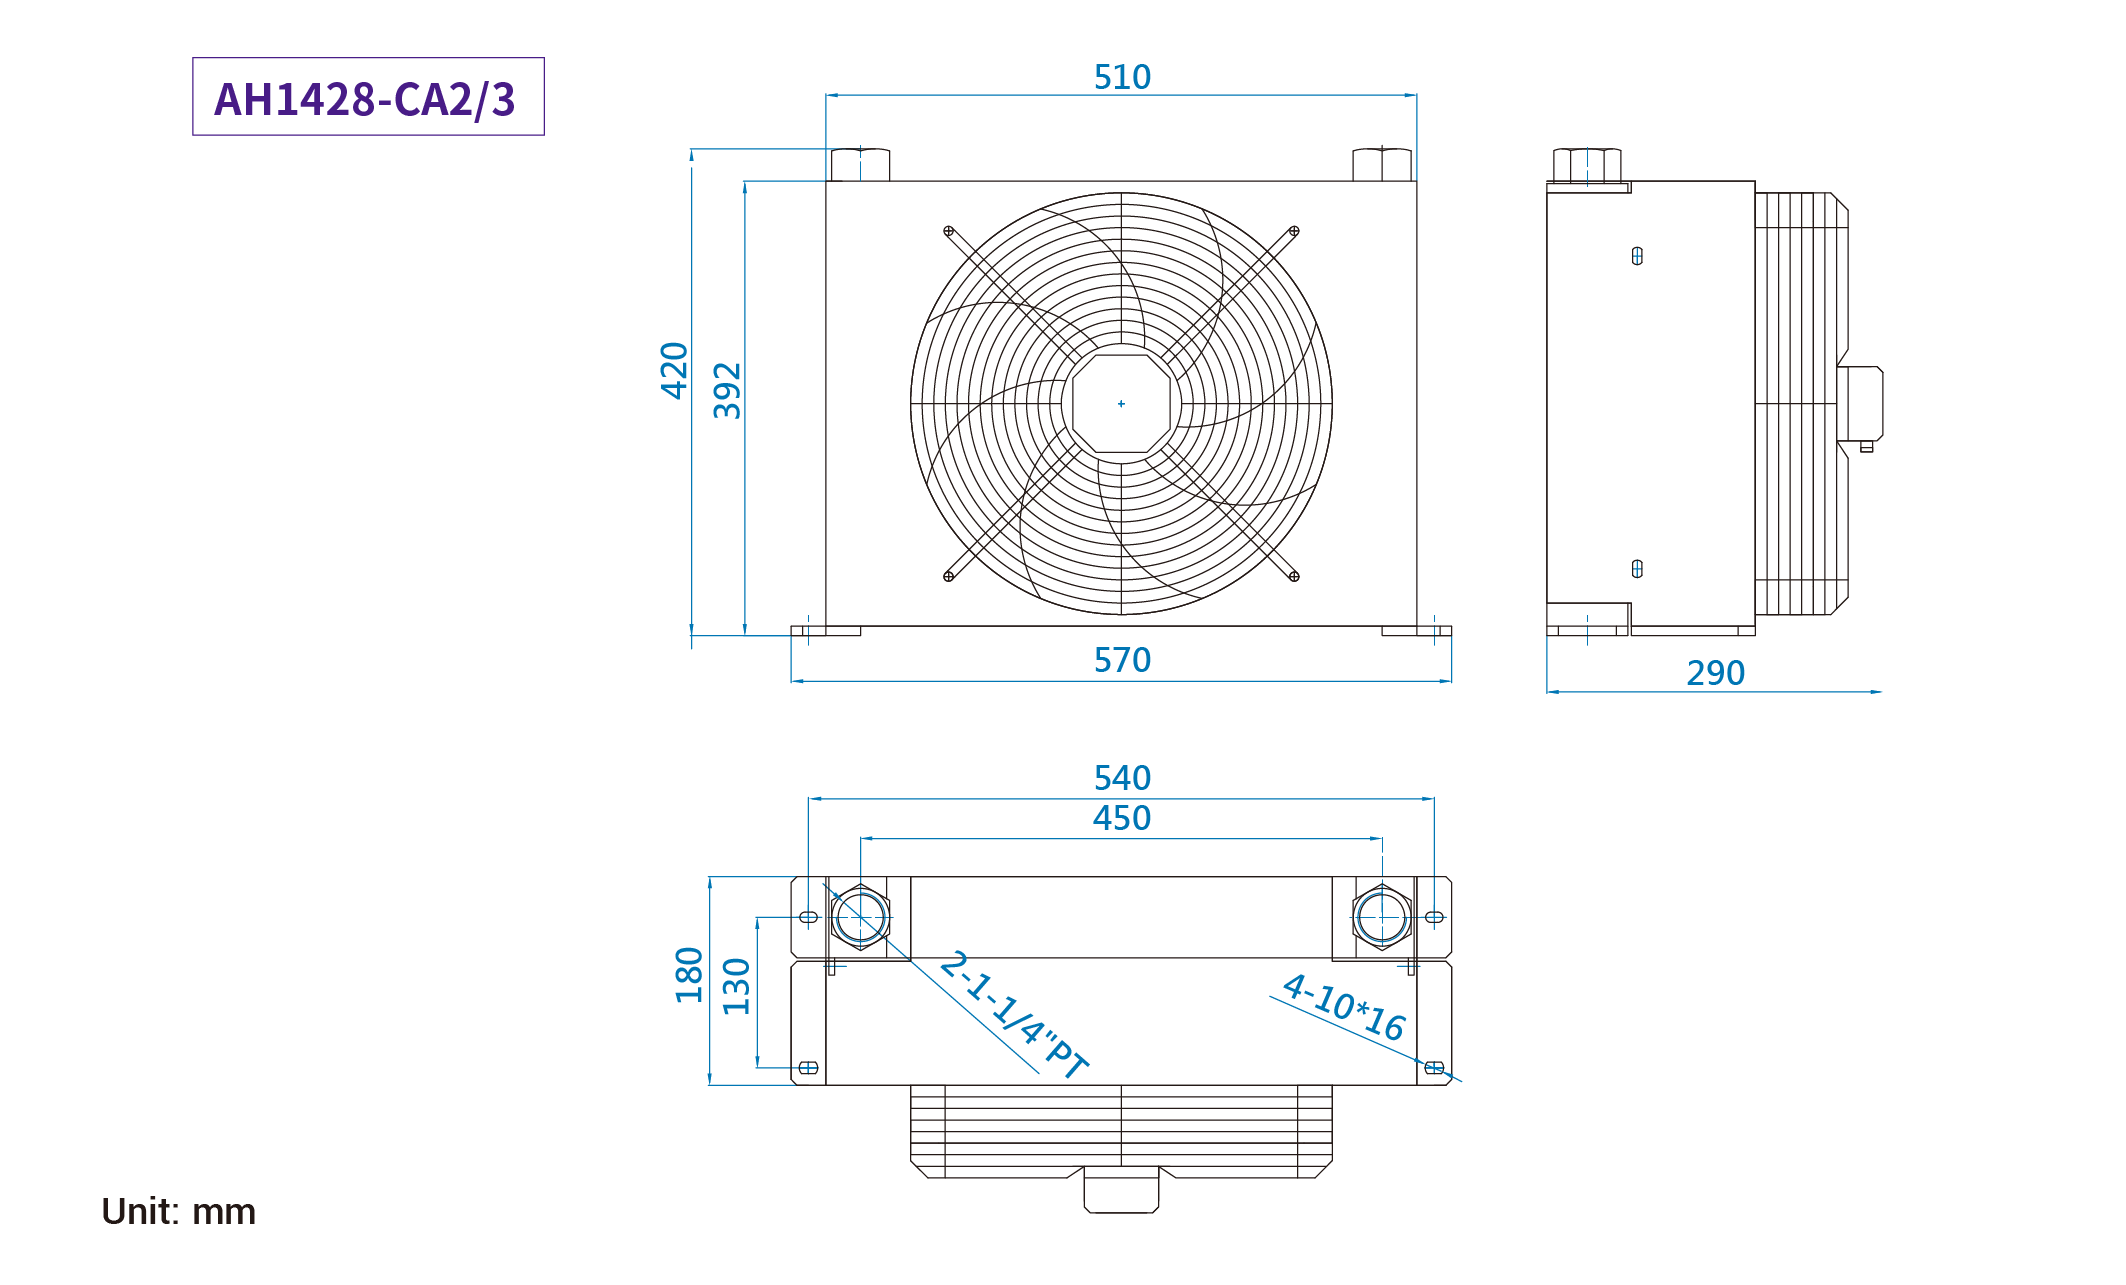 CMLMedium &amp; summus pressura aer refrigeratus coolers, mensurae, dimensio AH1428-CA2/3